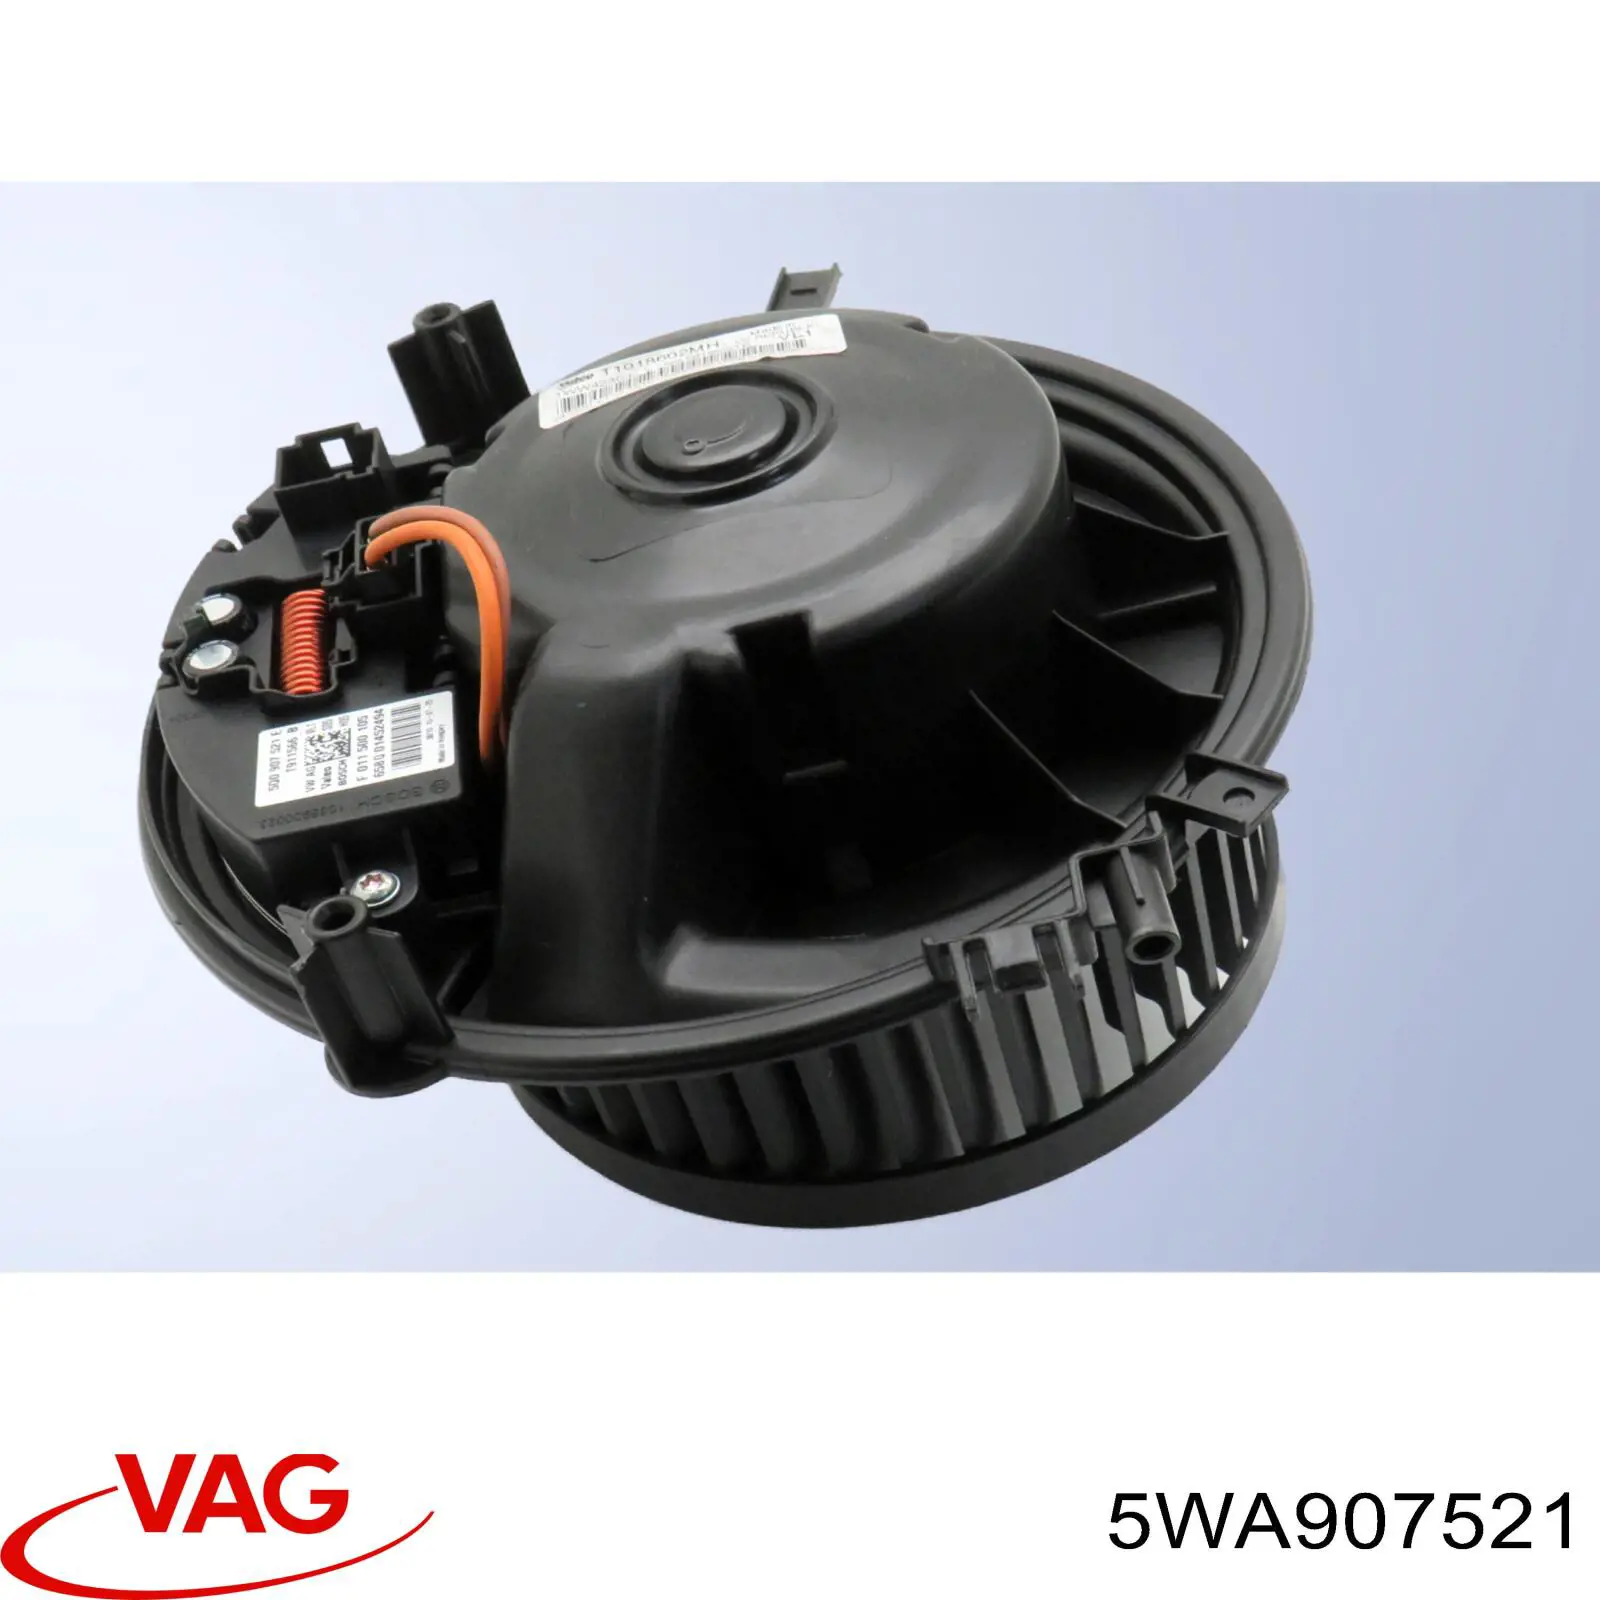 5WA907521 VAG control de velocidad de el ventilador de enfriamiento (unidad de control)